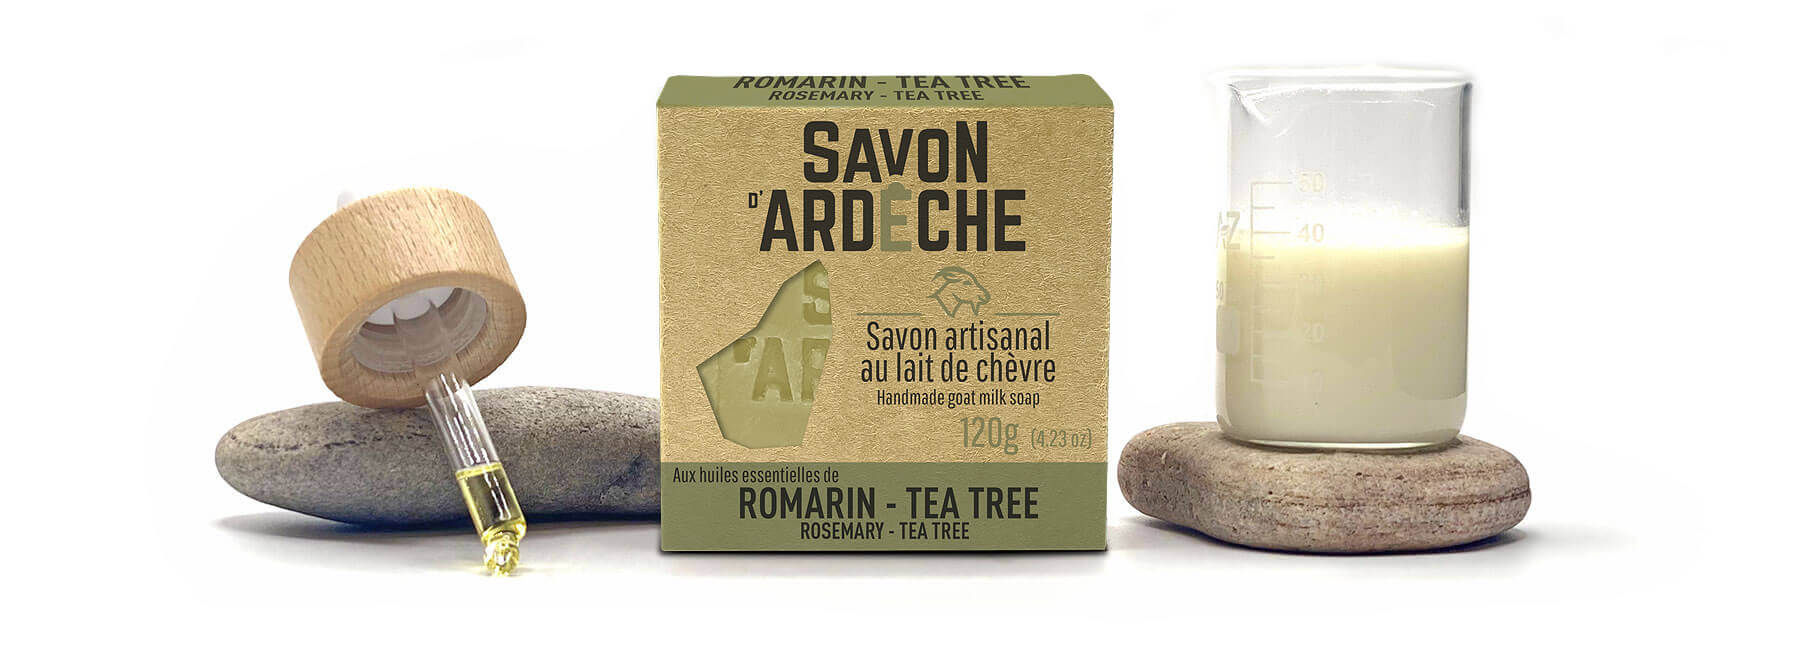 Le Savon d'Ardèche composé de lait de chèvre et d'huiles essentielles de Romarin et de Tea Tree